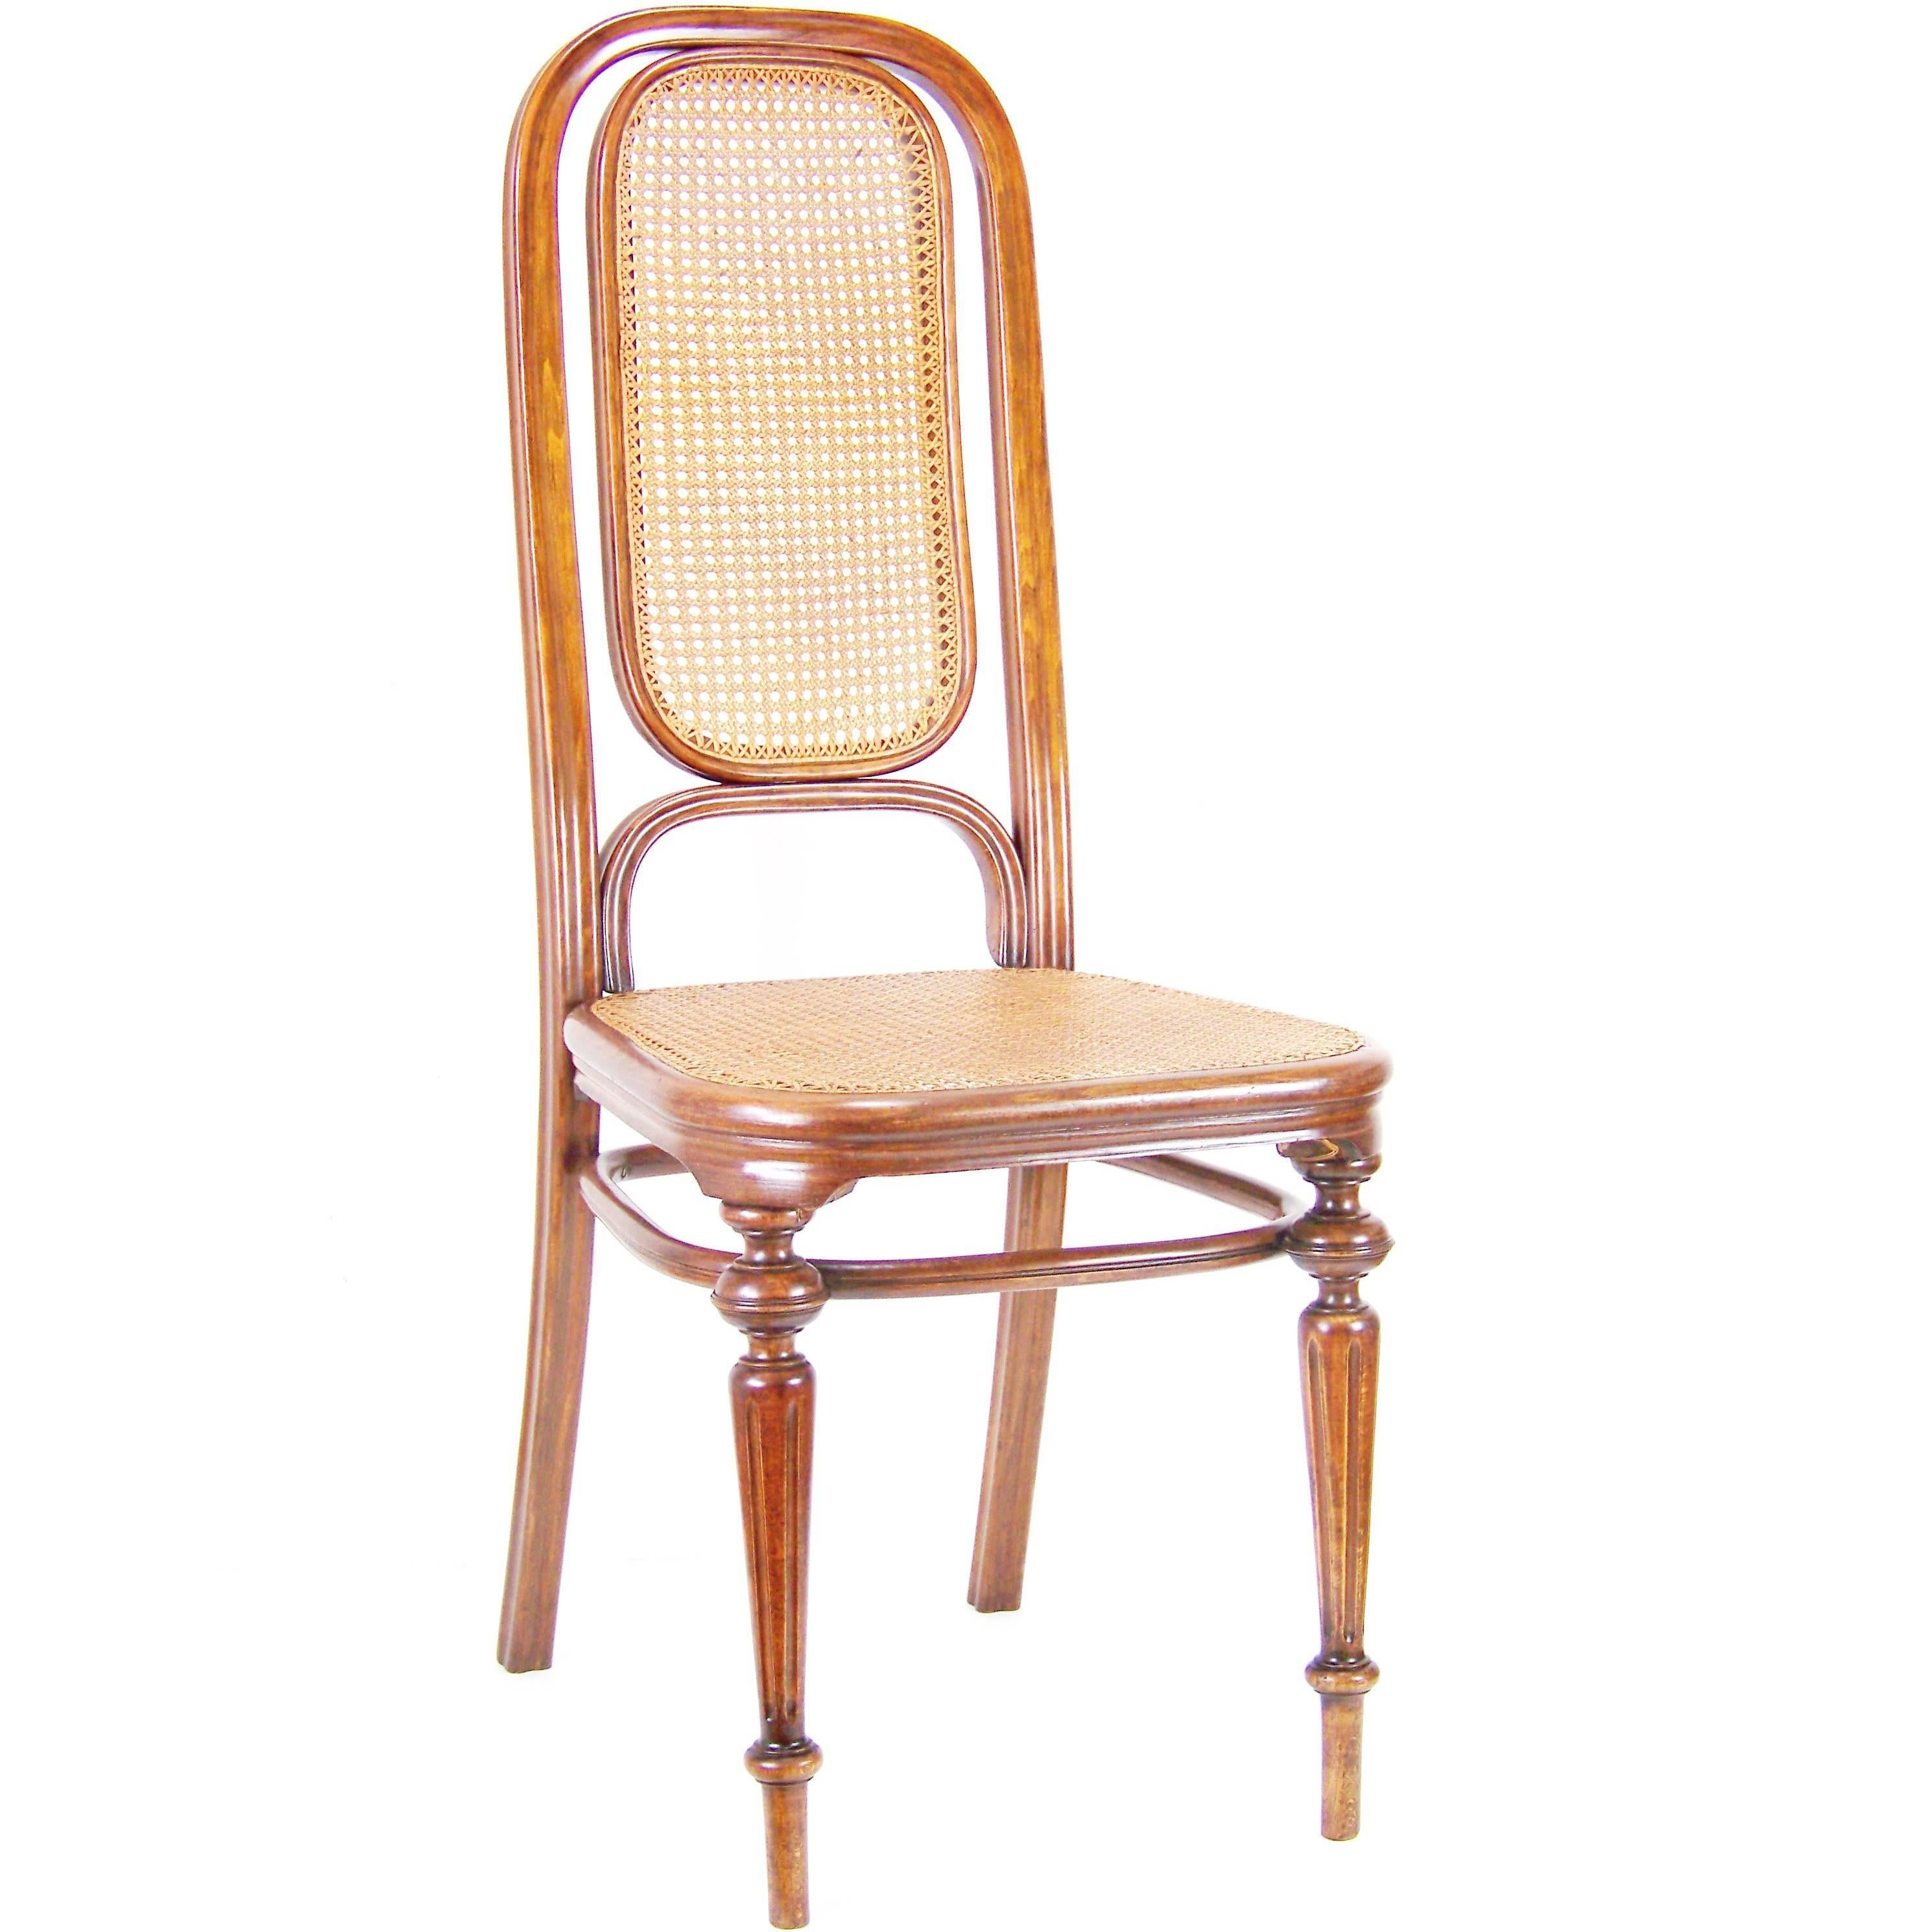 Chair Thonet Nr.32, since 1883